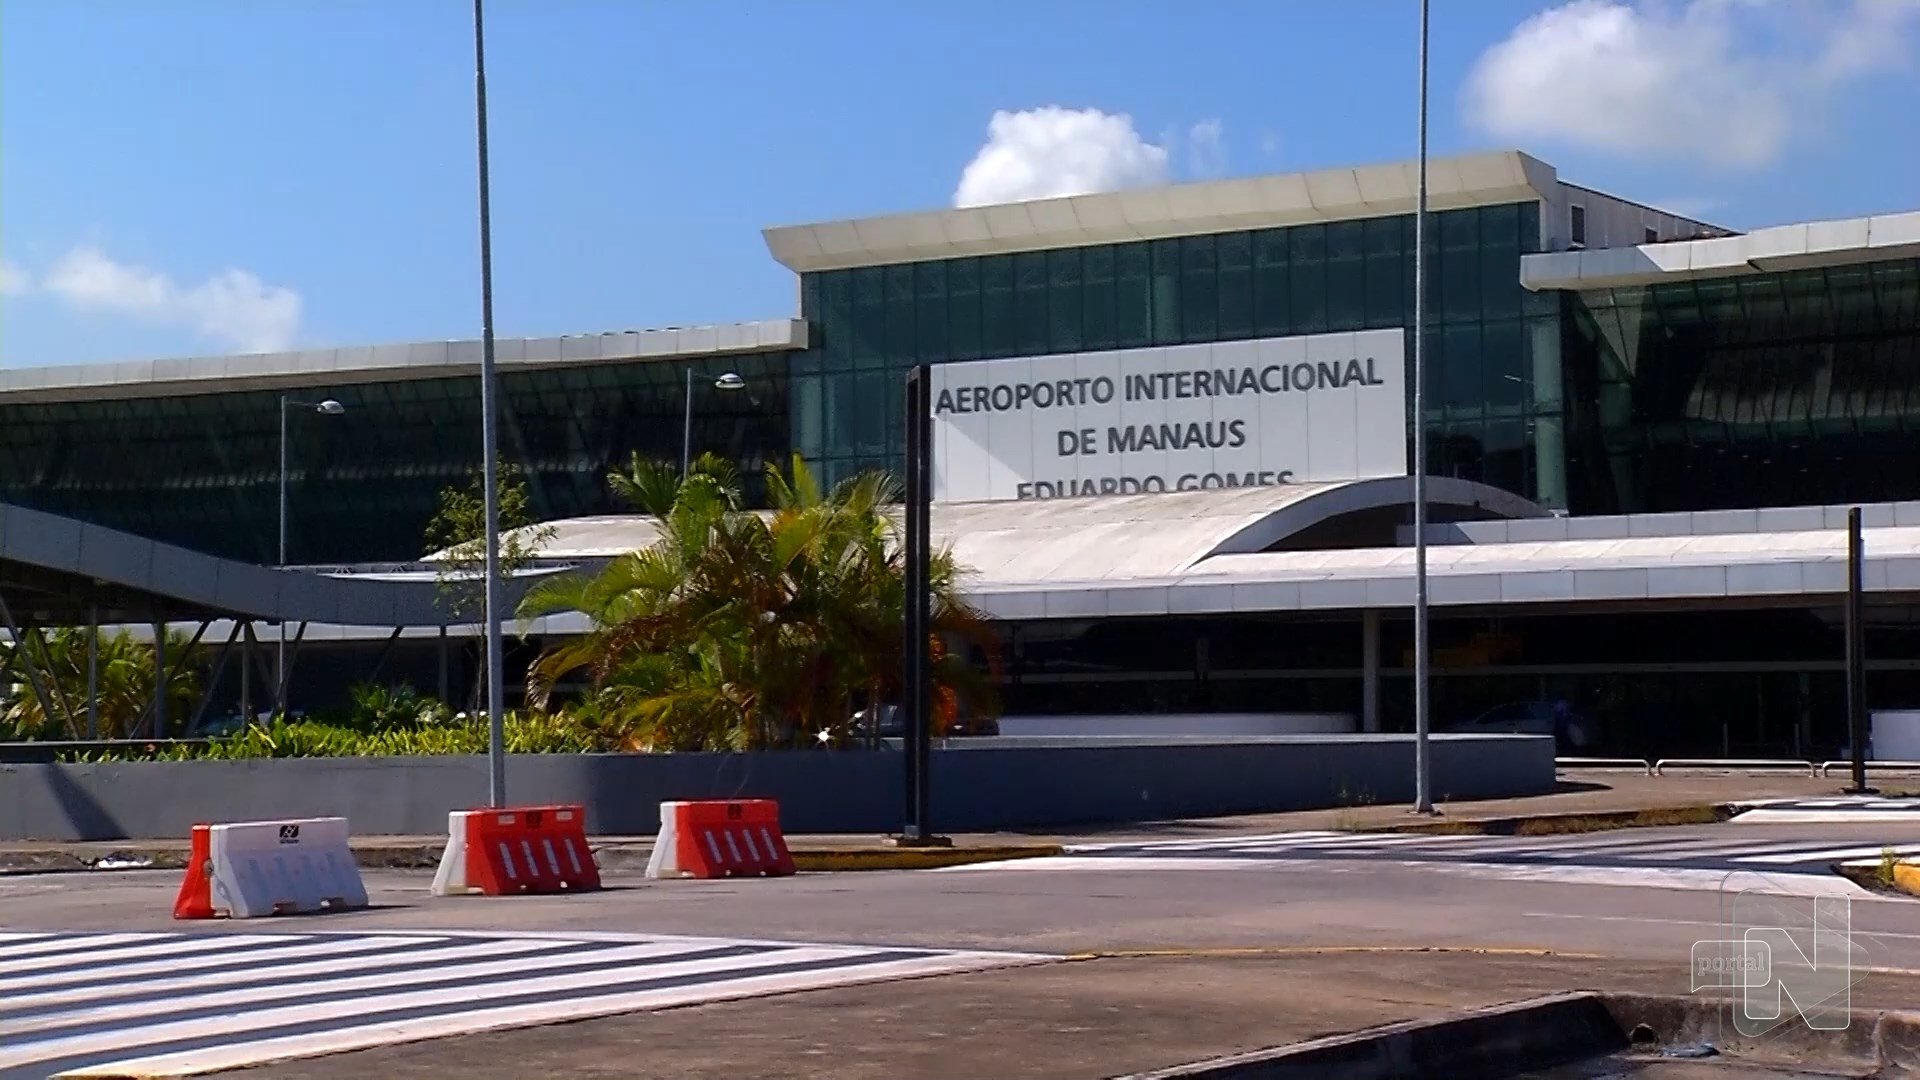 Suspeitos tentam embarcar com drogas em voo no aeroporto de Manaus